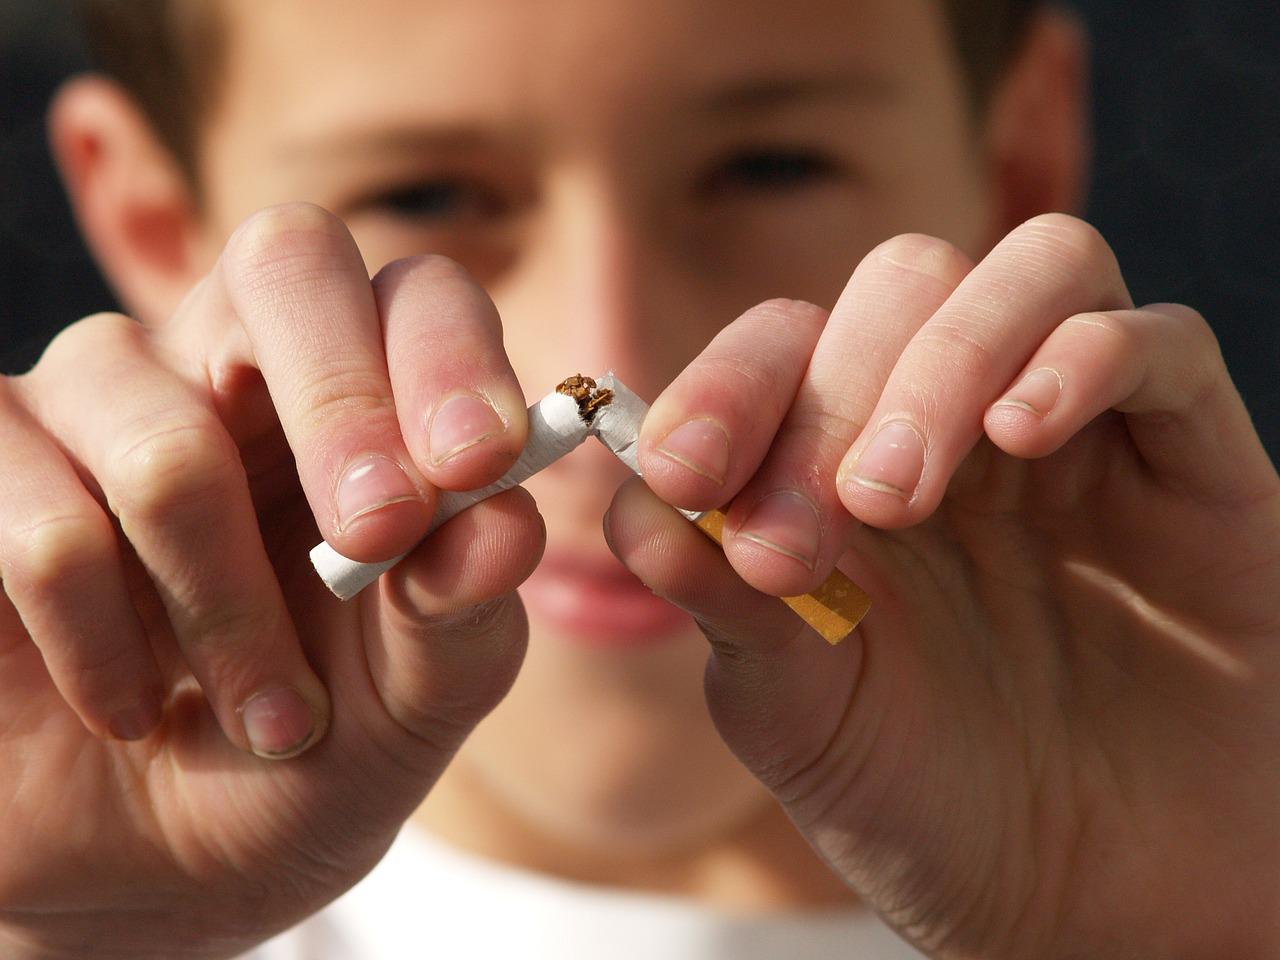 Weltnichtrauchertag – WHO warnt seit 35 Jahren vor den gesundheitlichen Gefahren durch Tabakkonsum